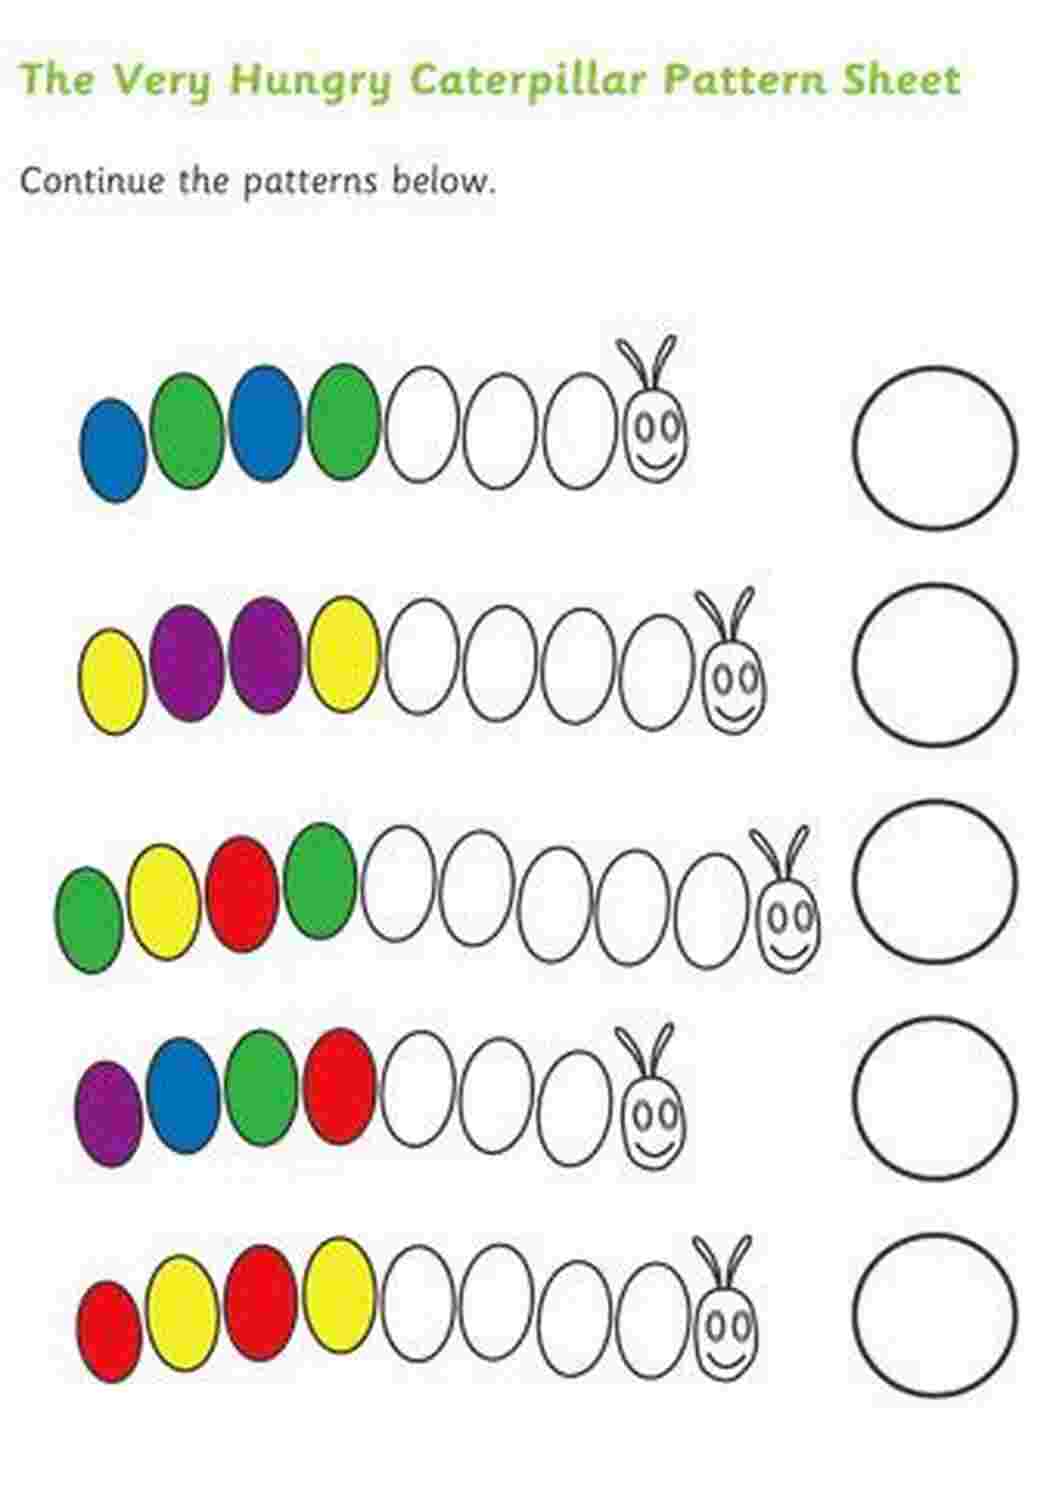 Раскраски Задания где нужно продолжить цветовой ряд по образцу Задания на внимательность с цветами и геометрическими фигурами